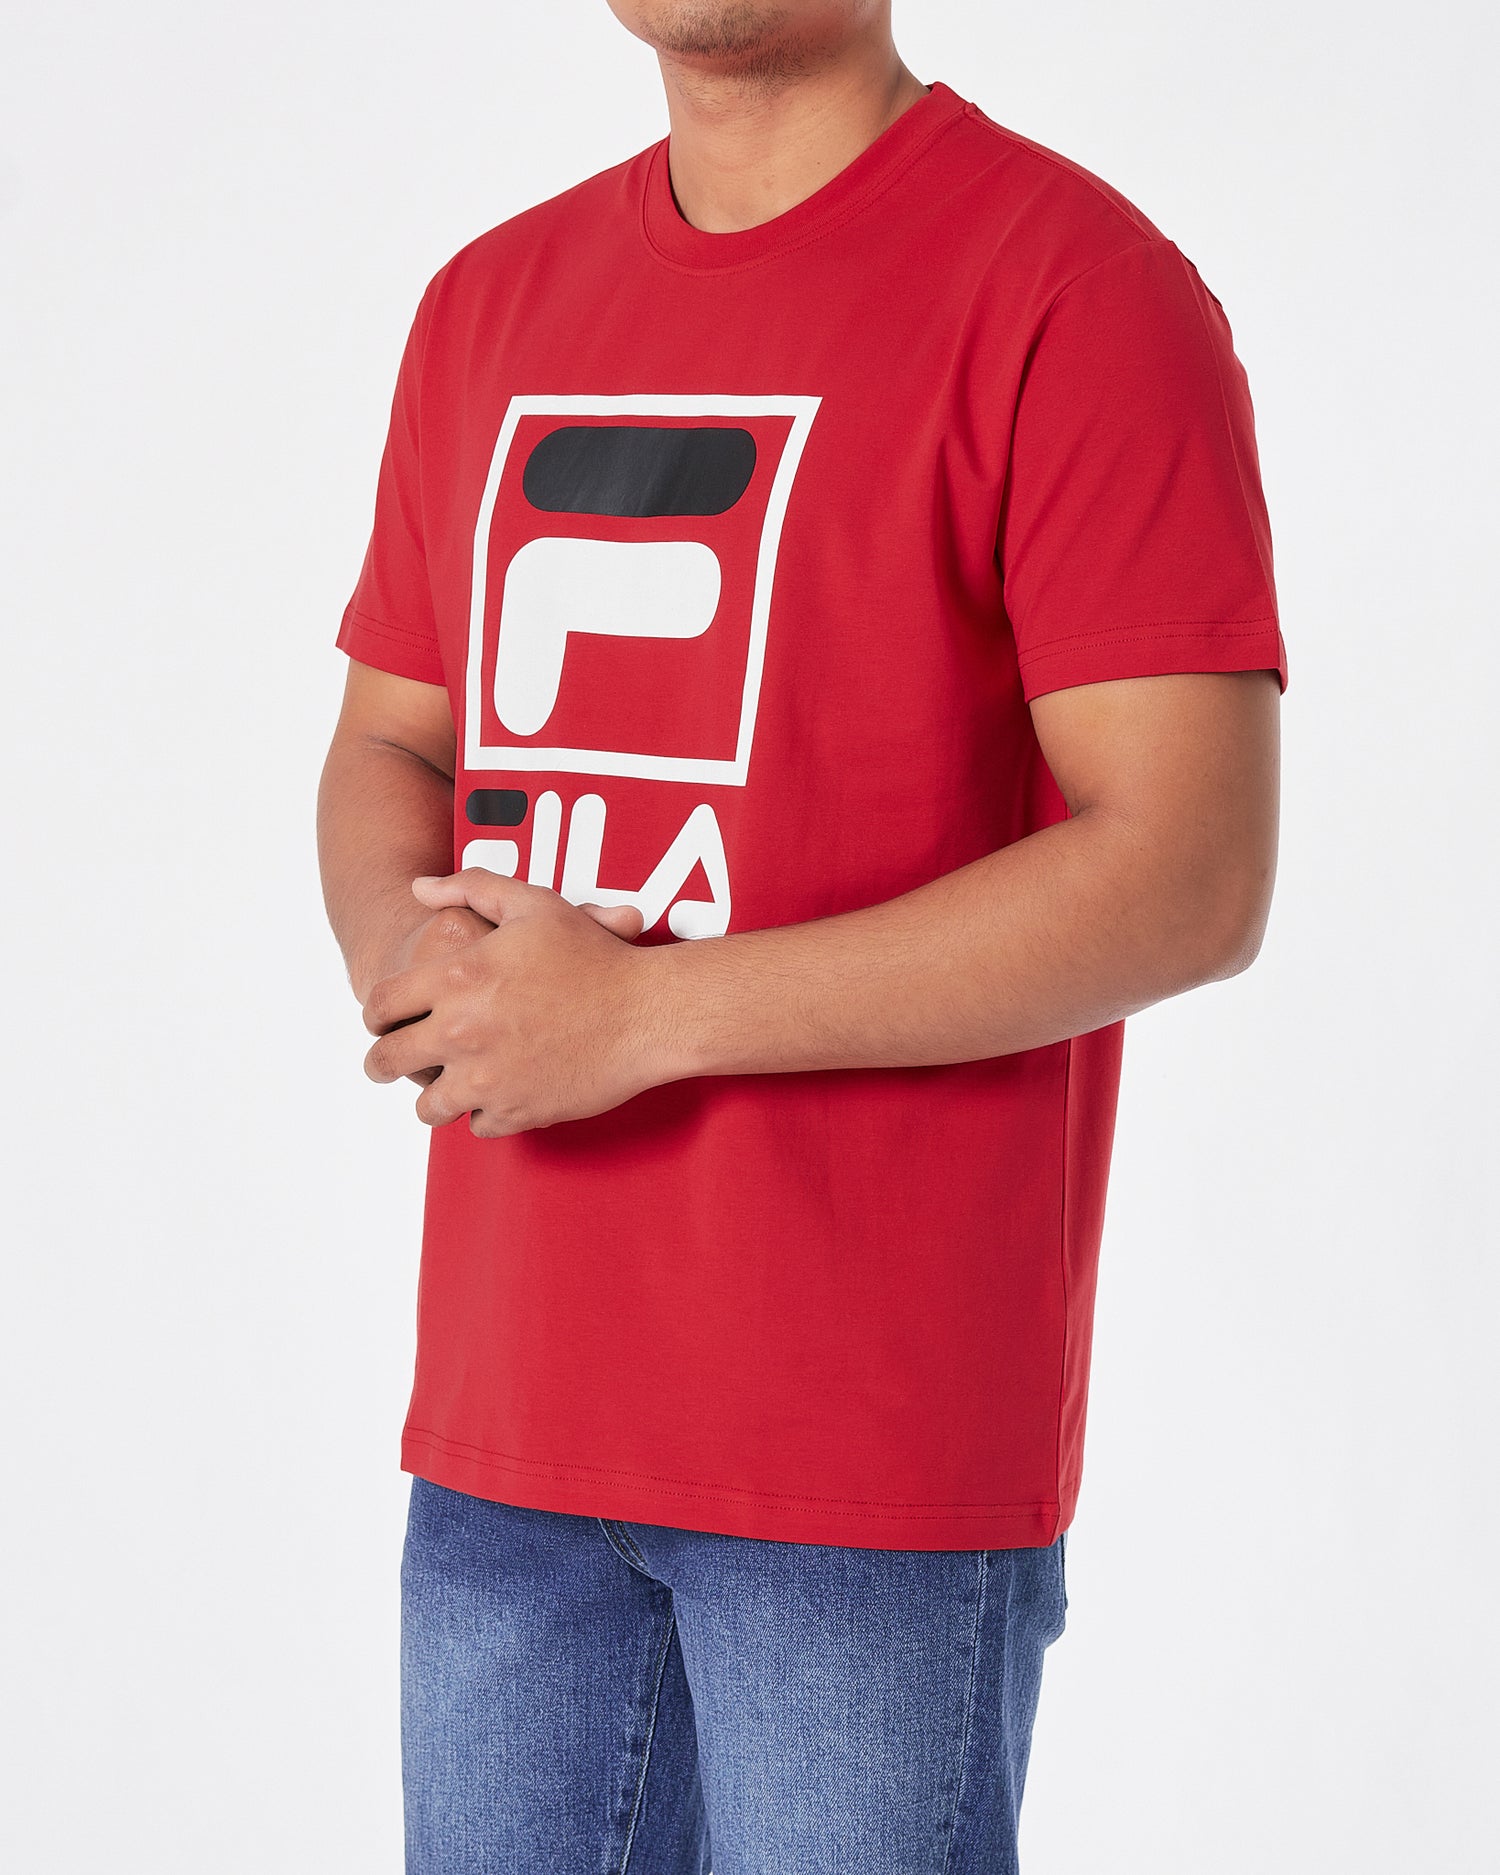 FIL Logo Printed Men Red T-Shirt 15.90